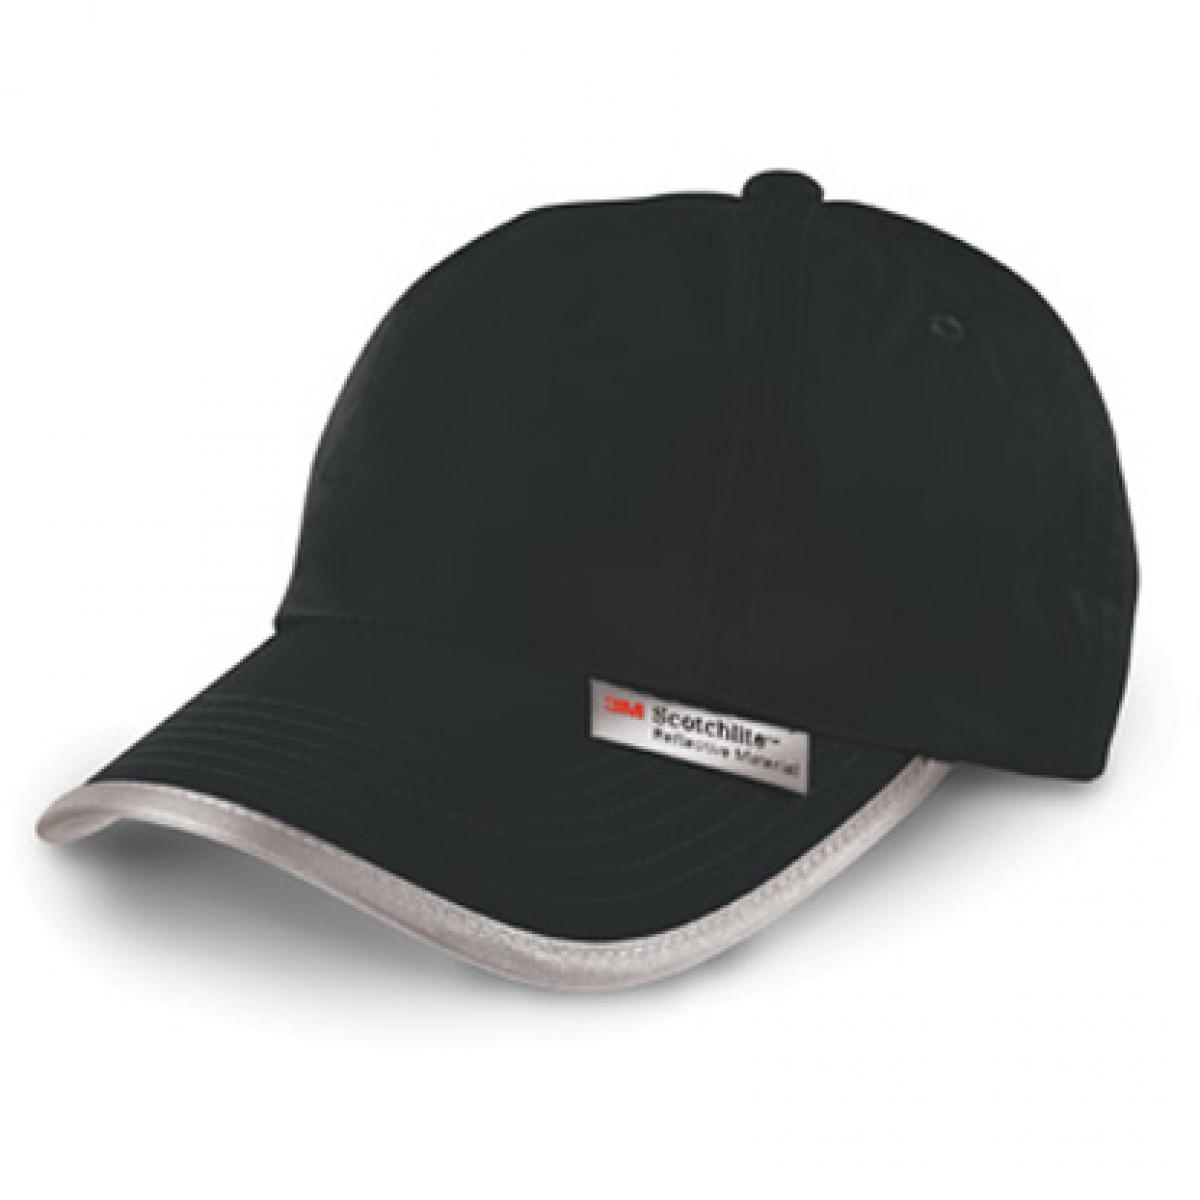 Hersteller: Result Headwear Herstellernummer: RC035X Artikelbezeichnung: High Viz Cap / Kappe / Mütze / Hut Farbe: Black